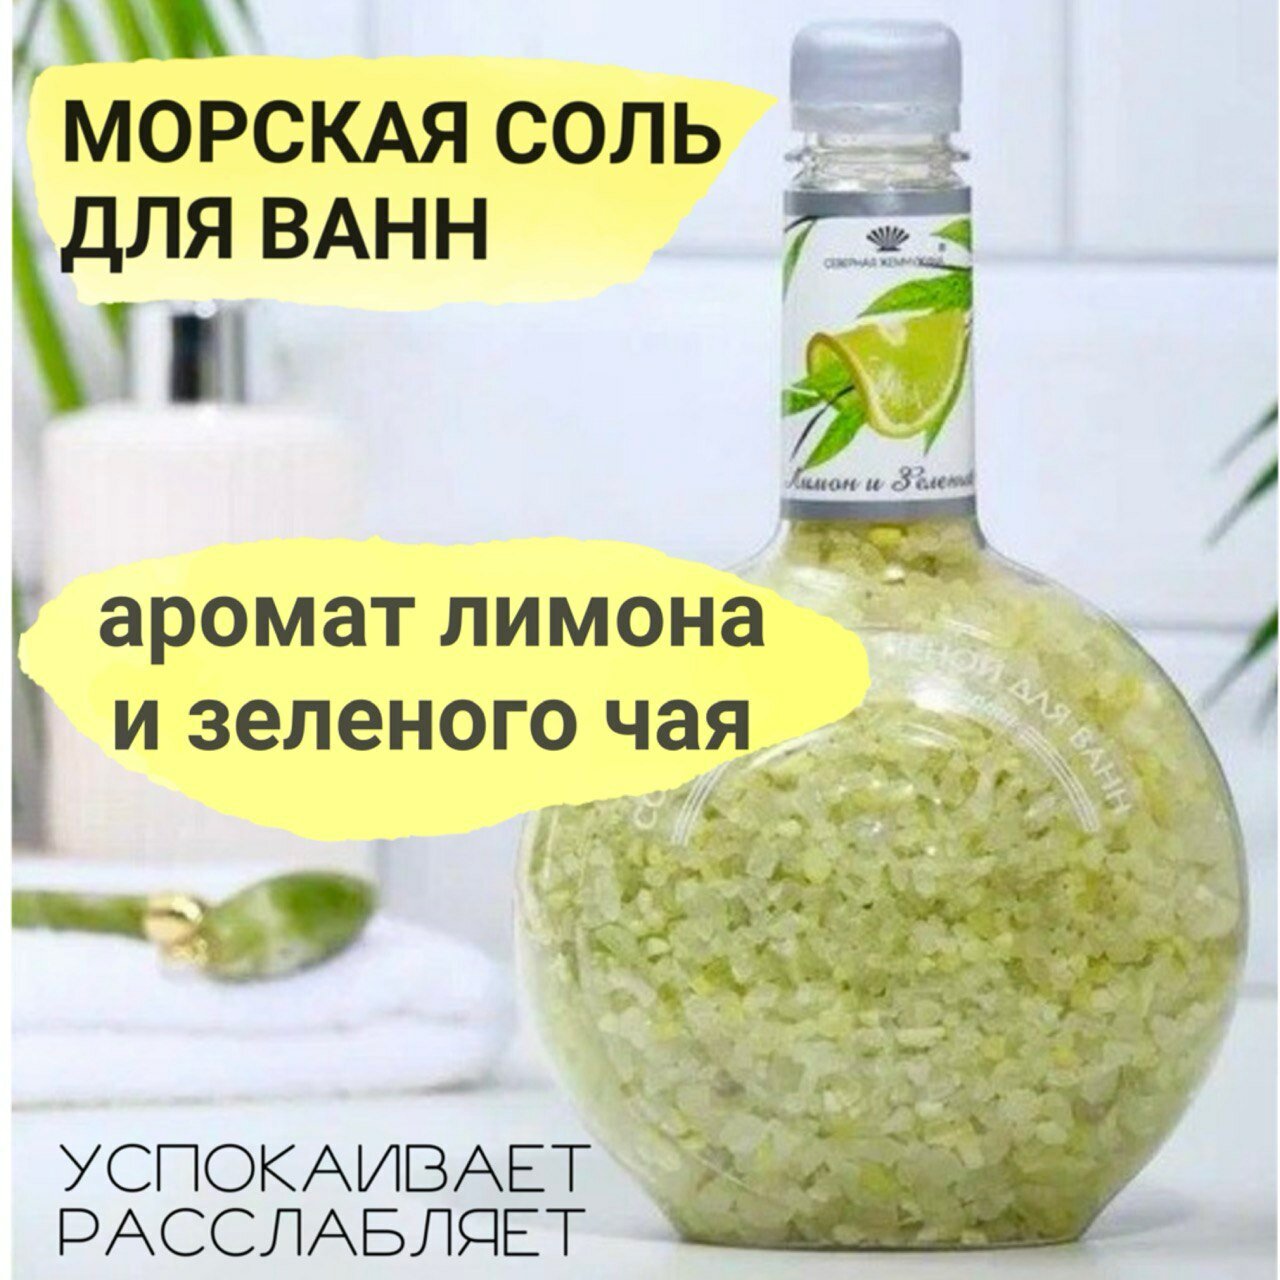 Морская соль для ванны "Лимон и зелёный чай" от бренда "Северная Жемчужина", 900 грамм